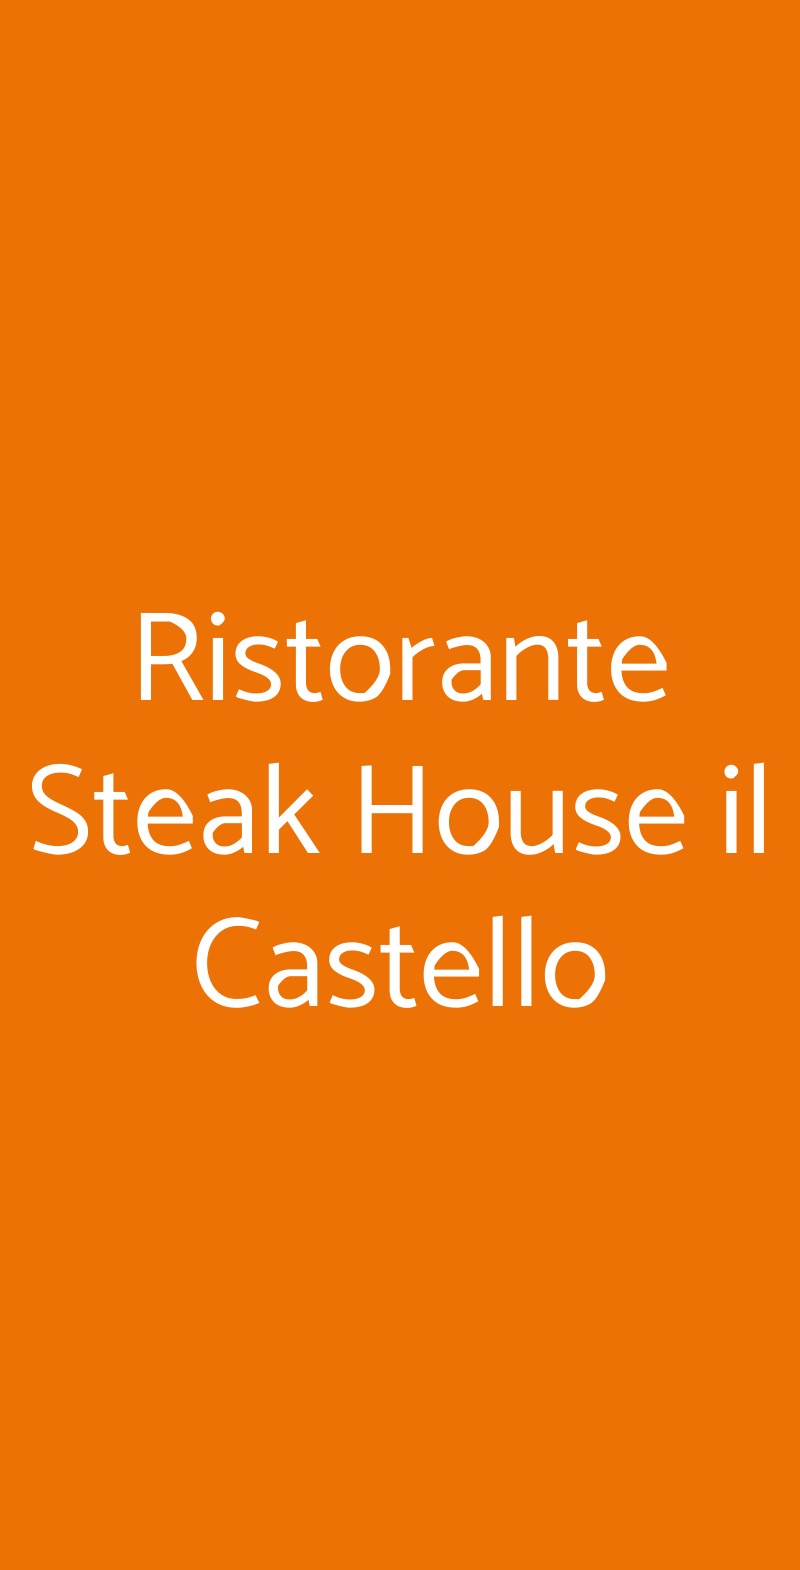 Ristorante Steak House il Castello Milano menù 1 pagina